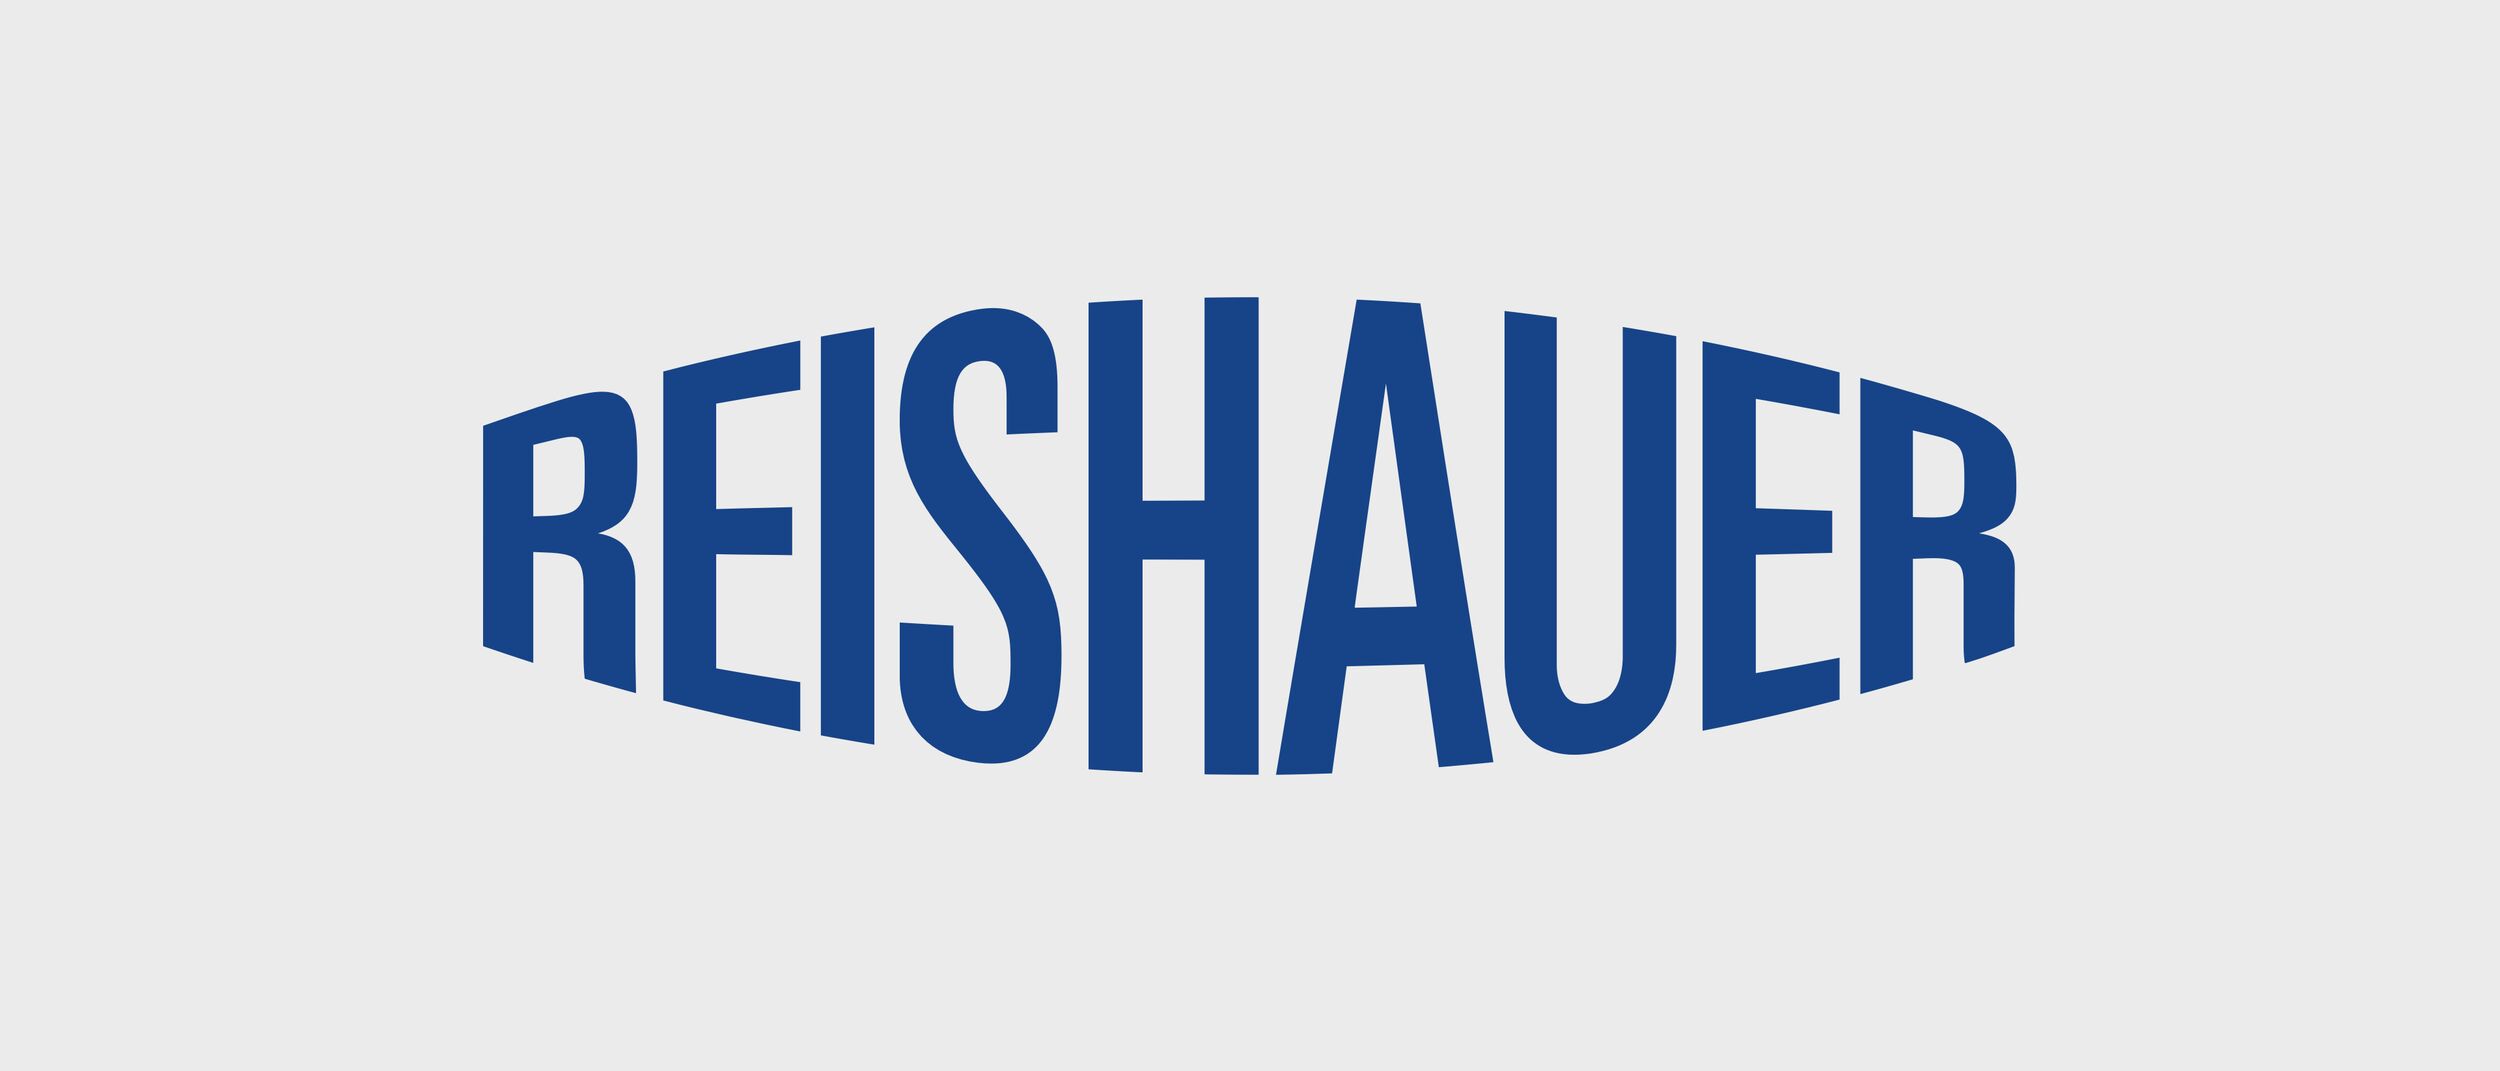 Reishauer - Branding